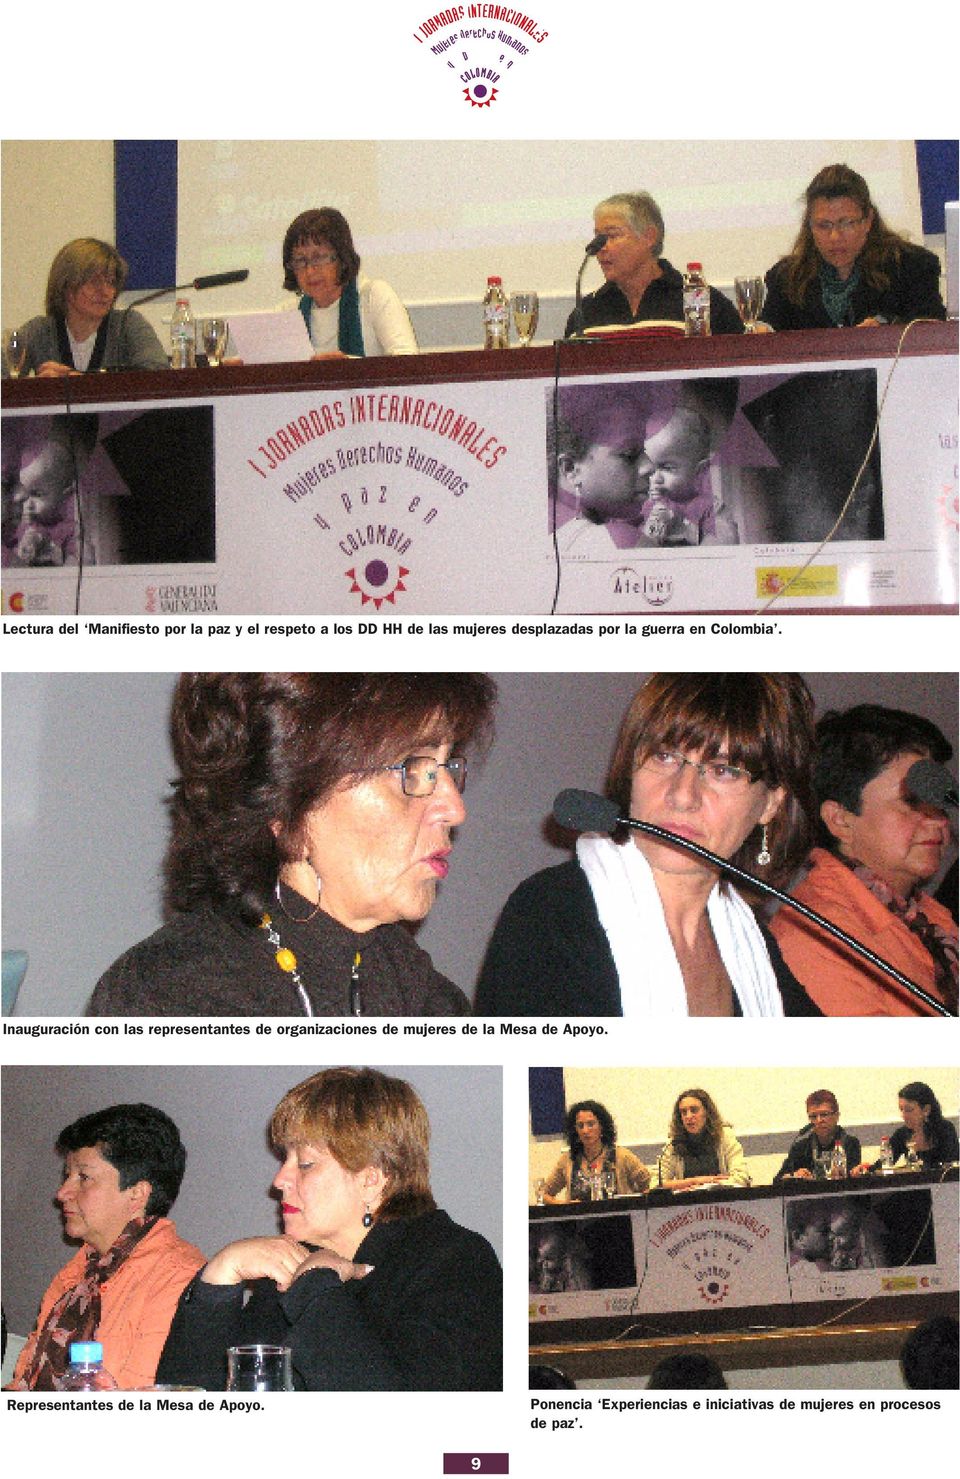 Inauguración con las representantes de organizaciones de mujeres de la Mesa